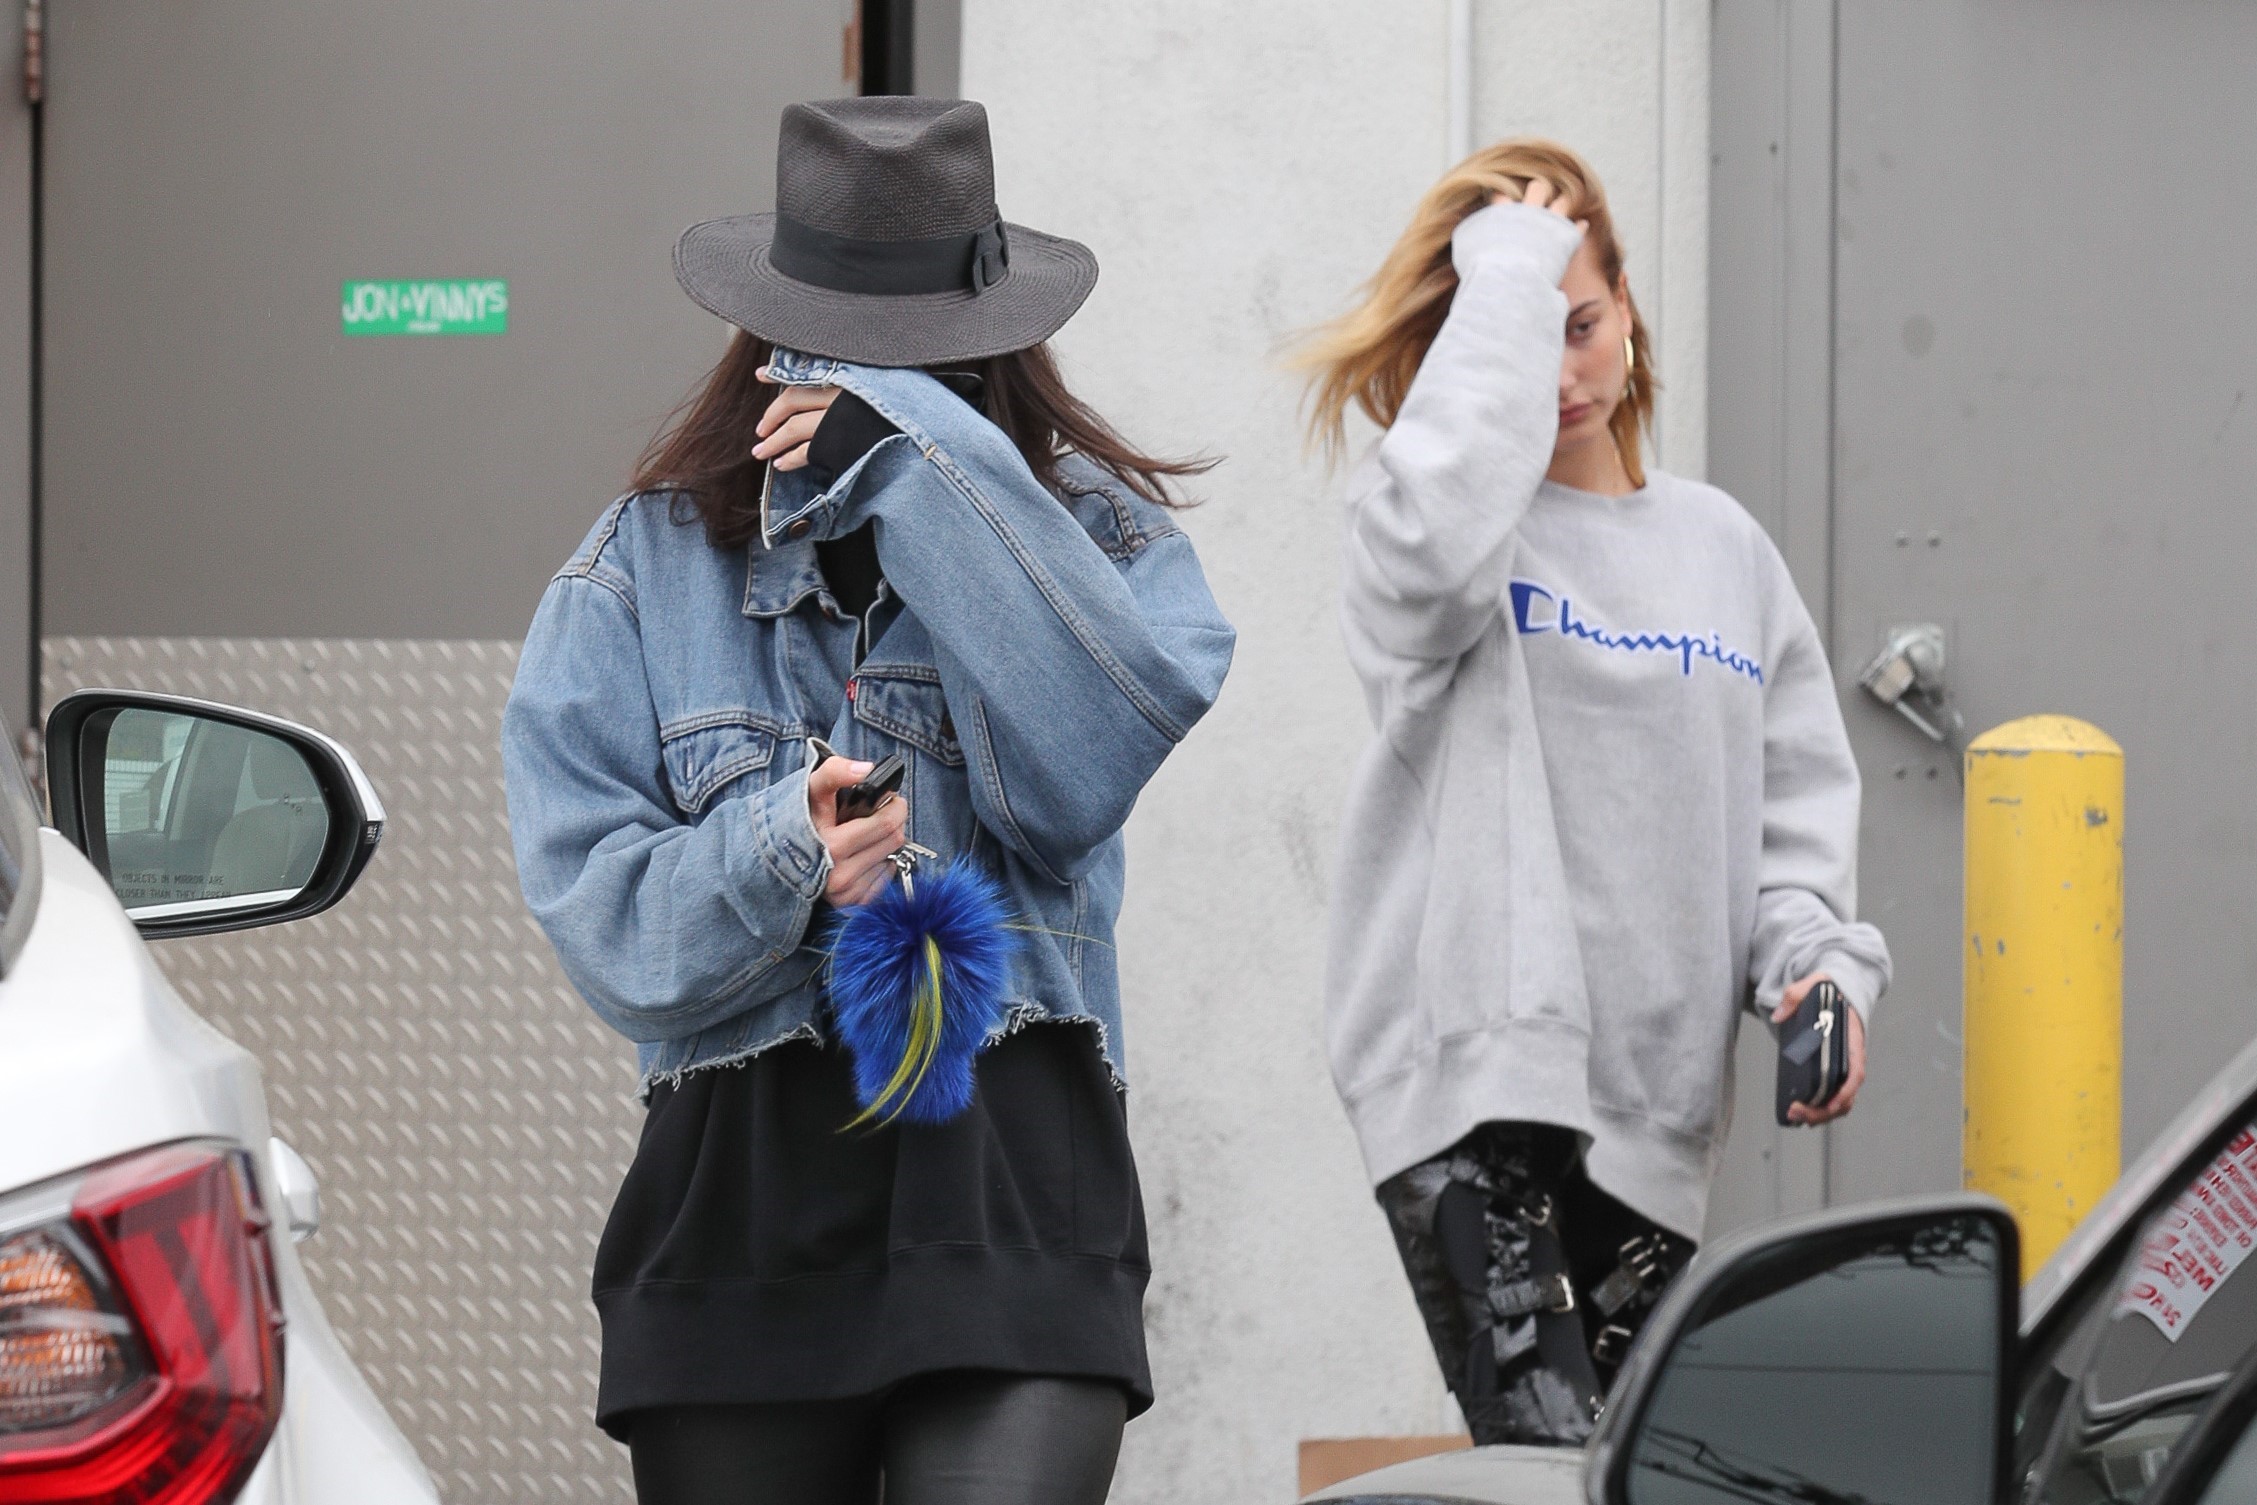 Kendall Jenner leaving a hair salon in LA